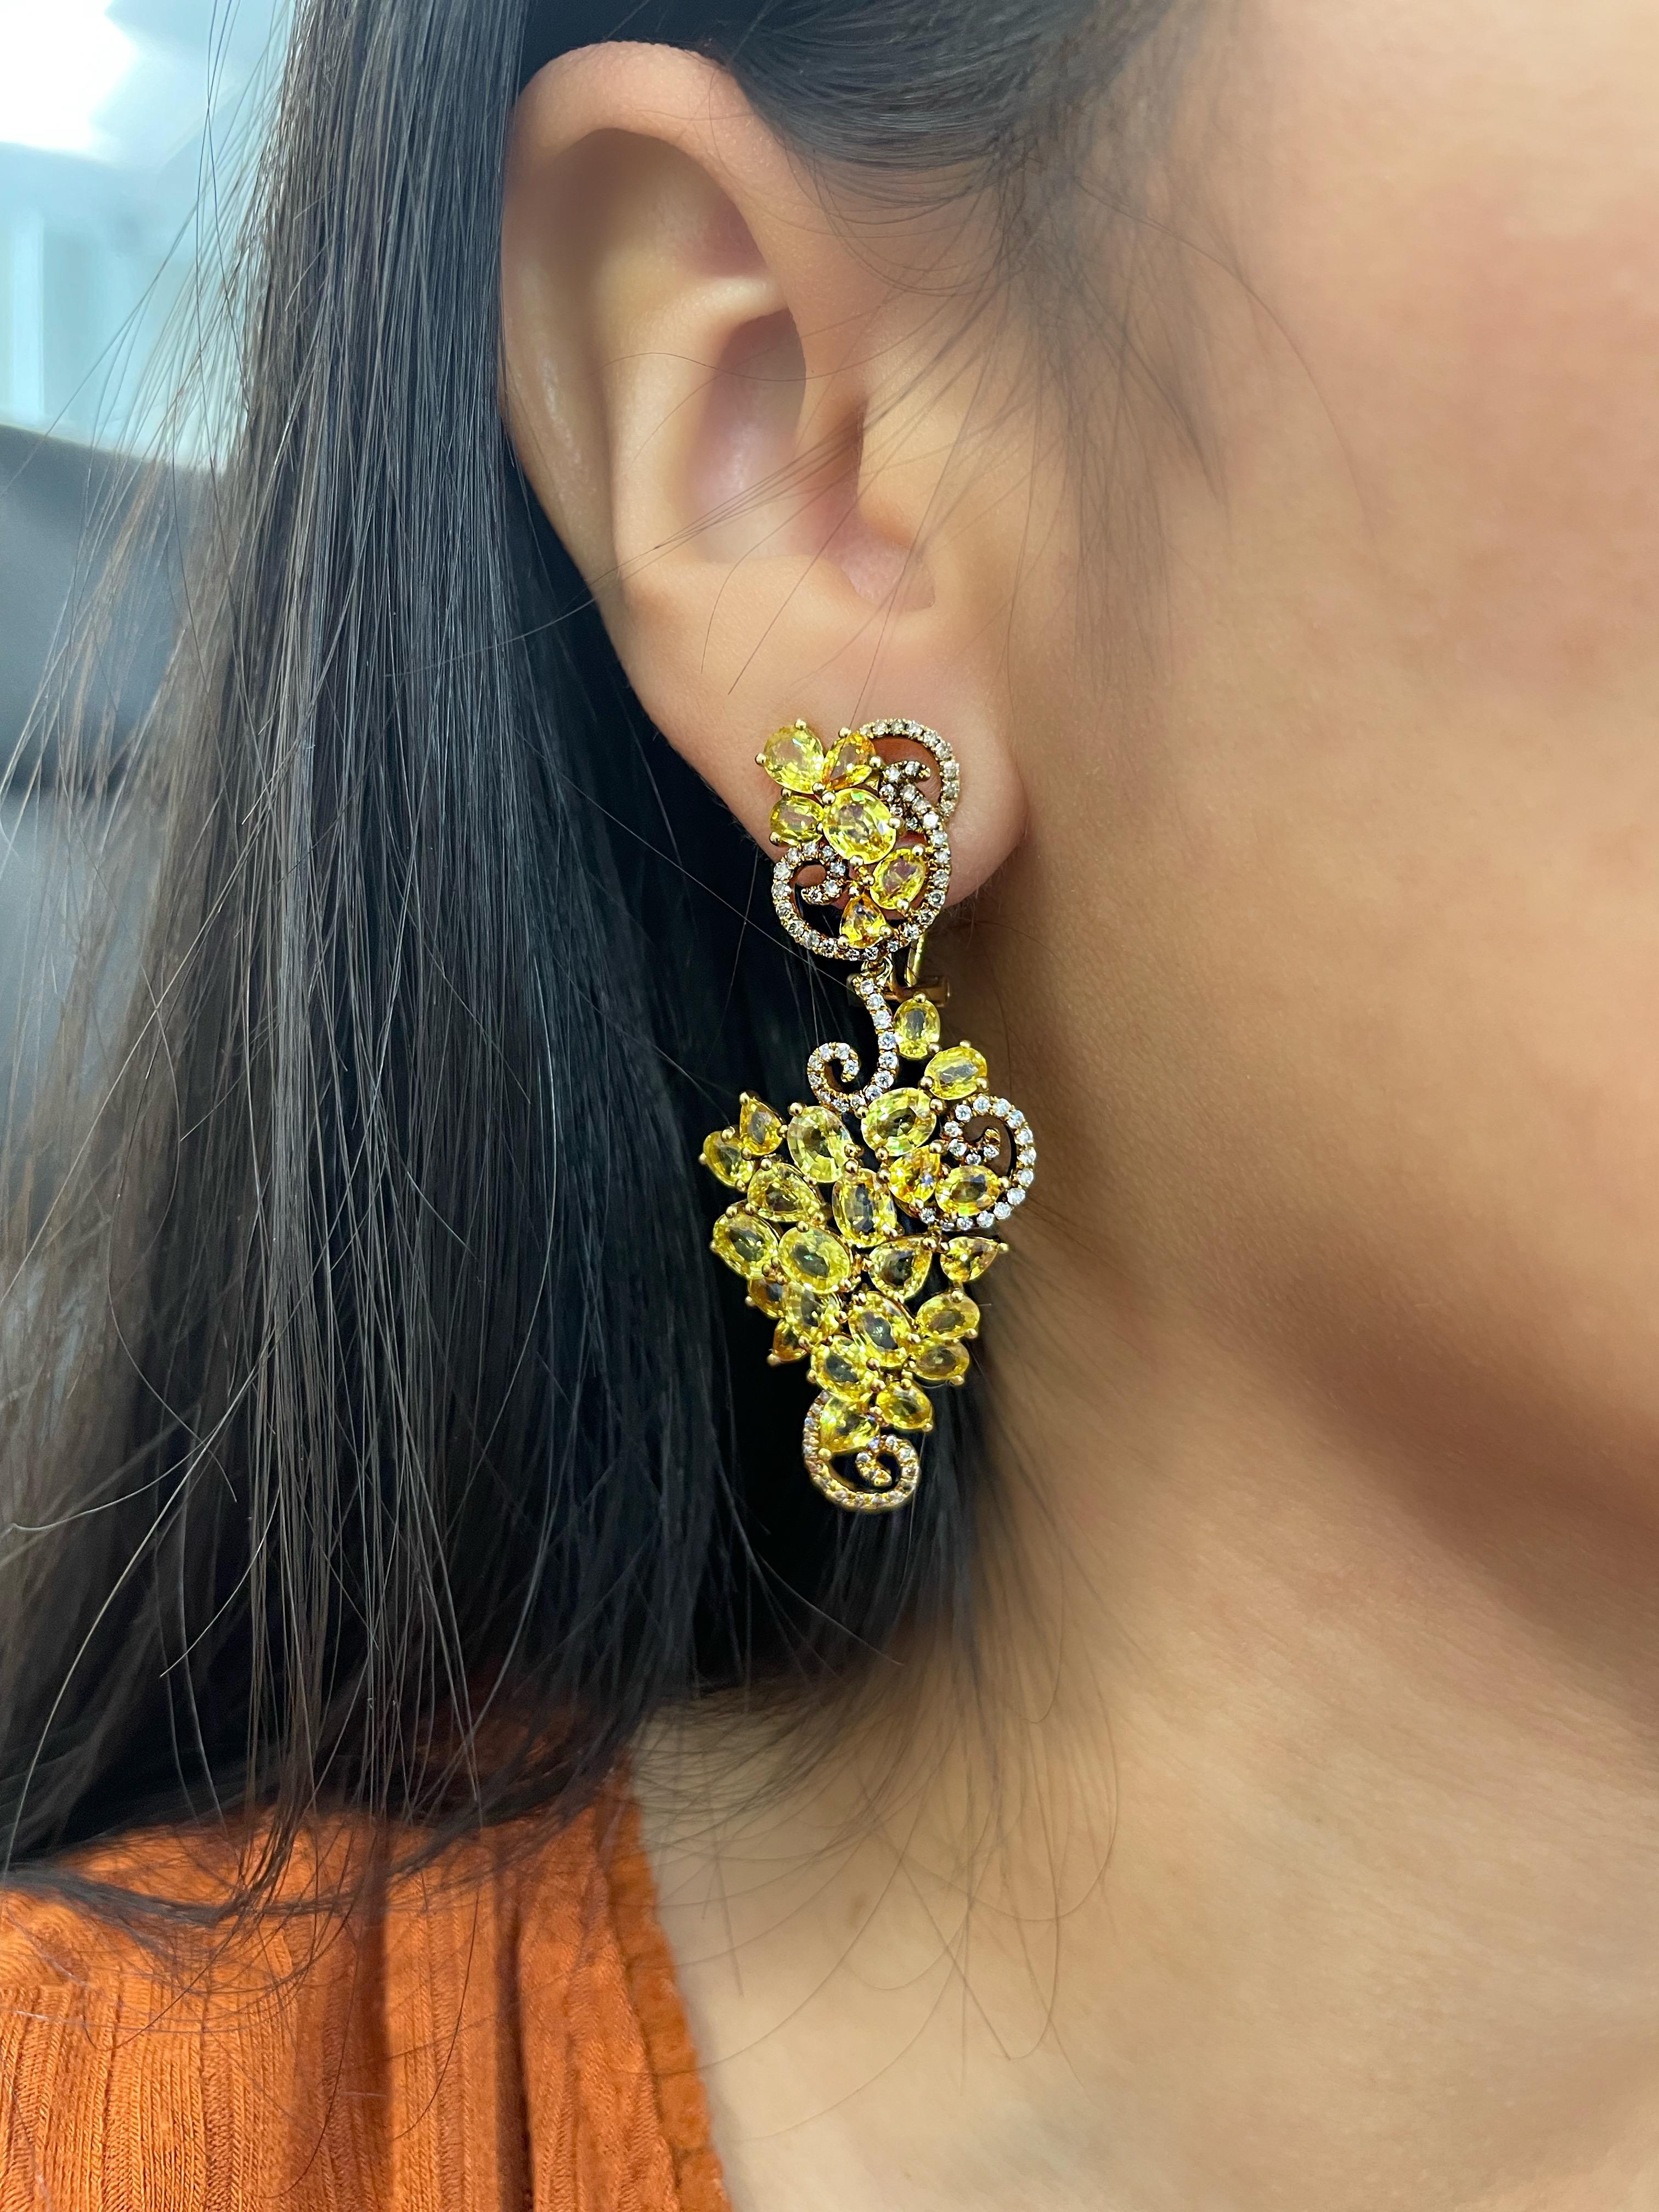  Entdecken Sie die ultimative Eleganz und Raffinesse mit diesen atemberaubenden Ohrringen aus natürlichem gelbem Saphir und Diamanten (23,98 ctw). Die leuchtend gelben Saphire haben ein Gesamtgewicht von 22,80 Karat. Sie werden perfekt ergänzt durch